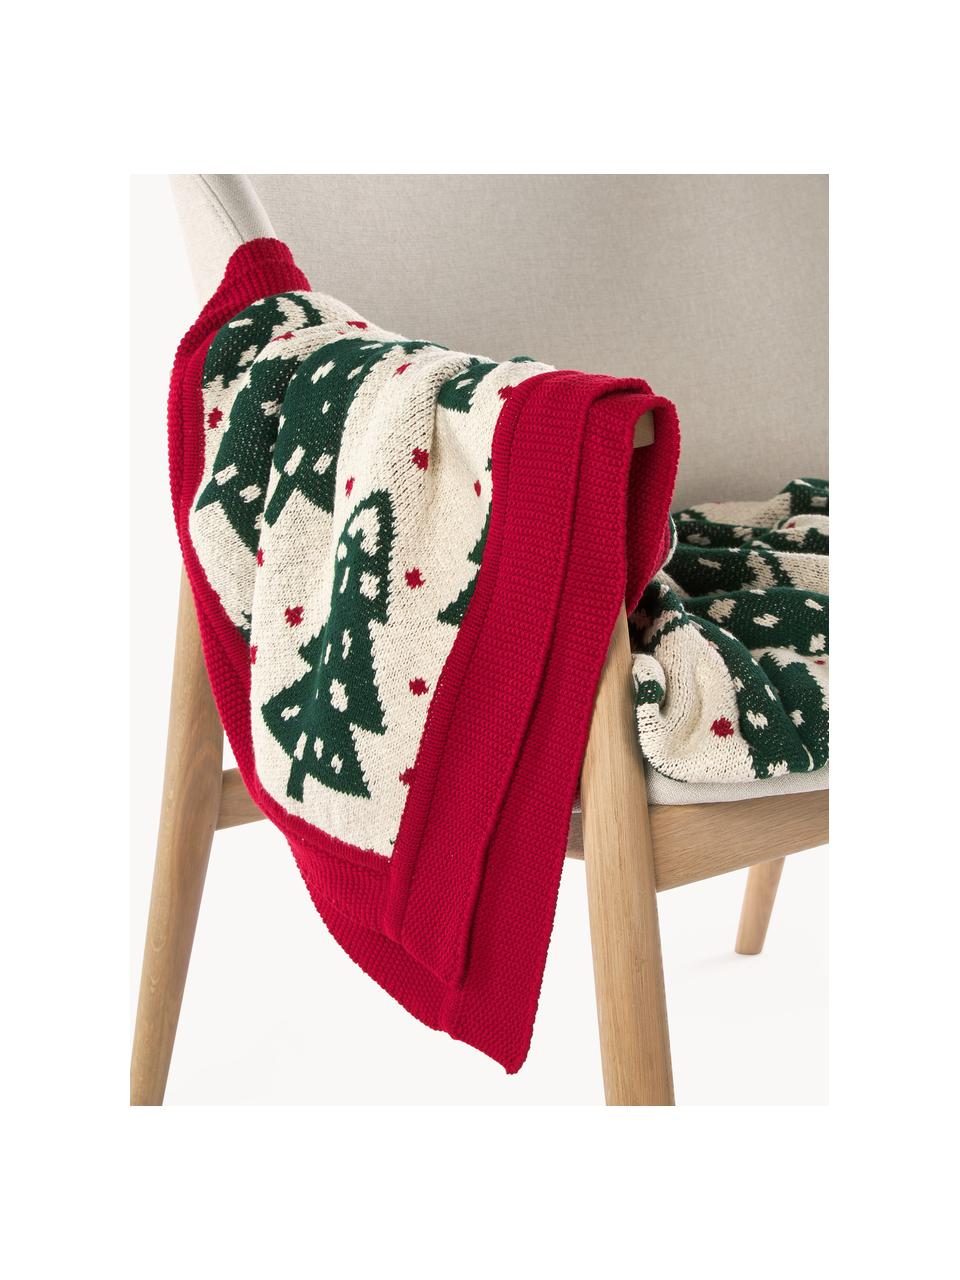 Coperta in cotone con motivo natalizio Noeleen, 100% cotone, Rosso, bianco latte, verde scuro, Larg. 130 x Lung. 170 cm